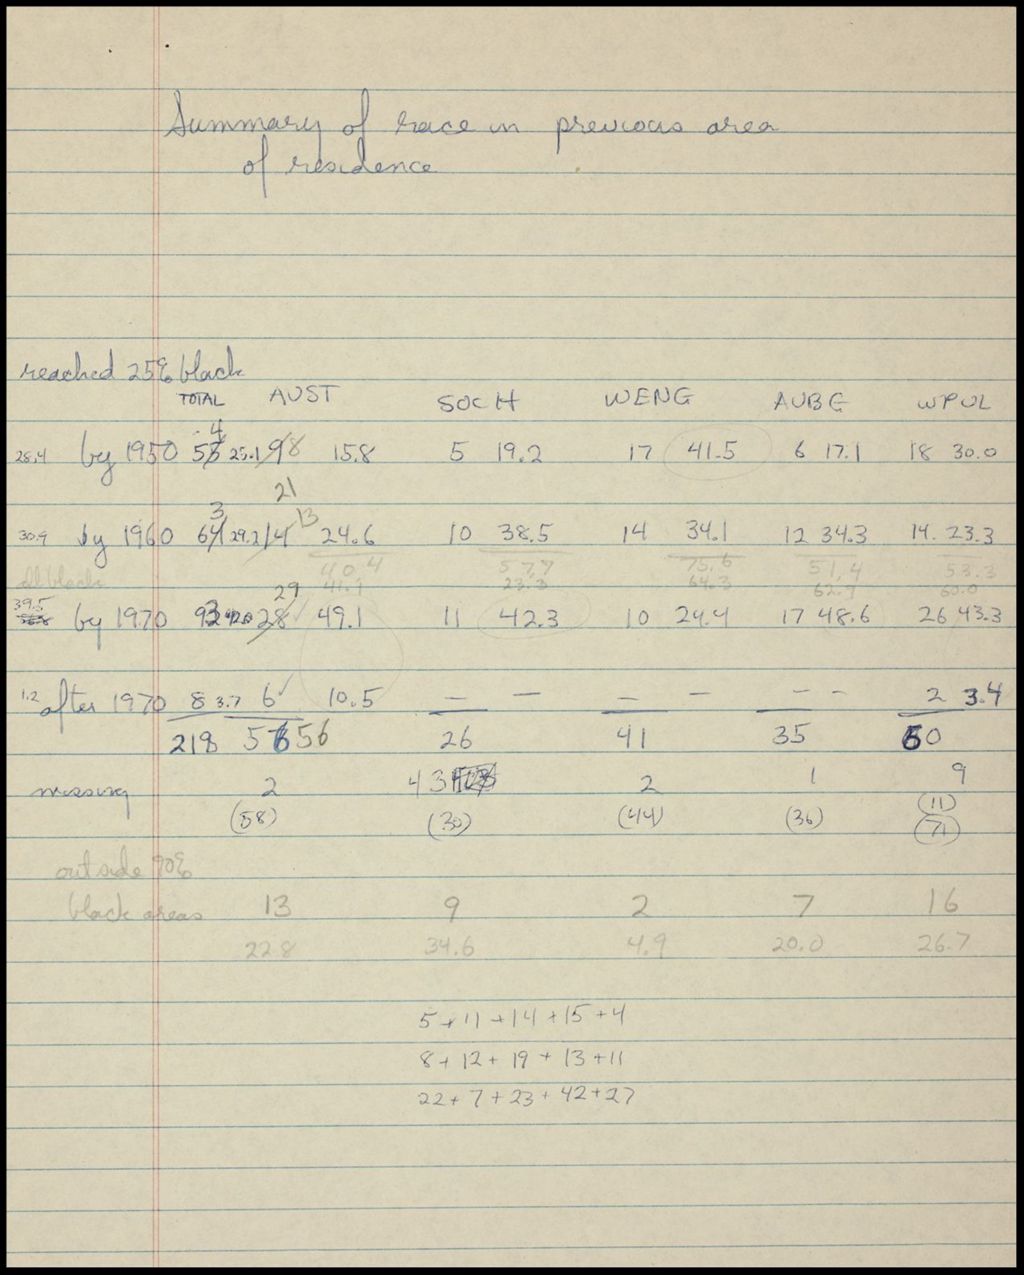 Census, 1970 (Folder III-302)